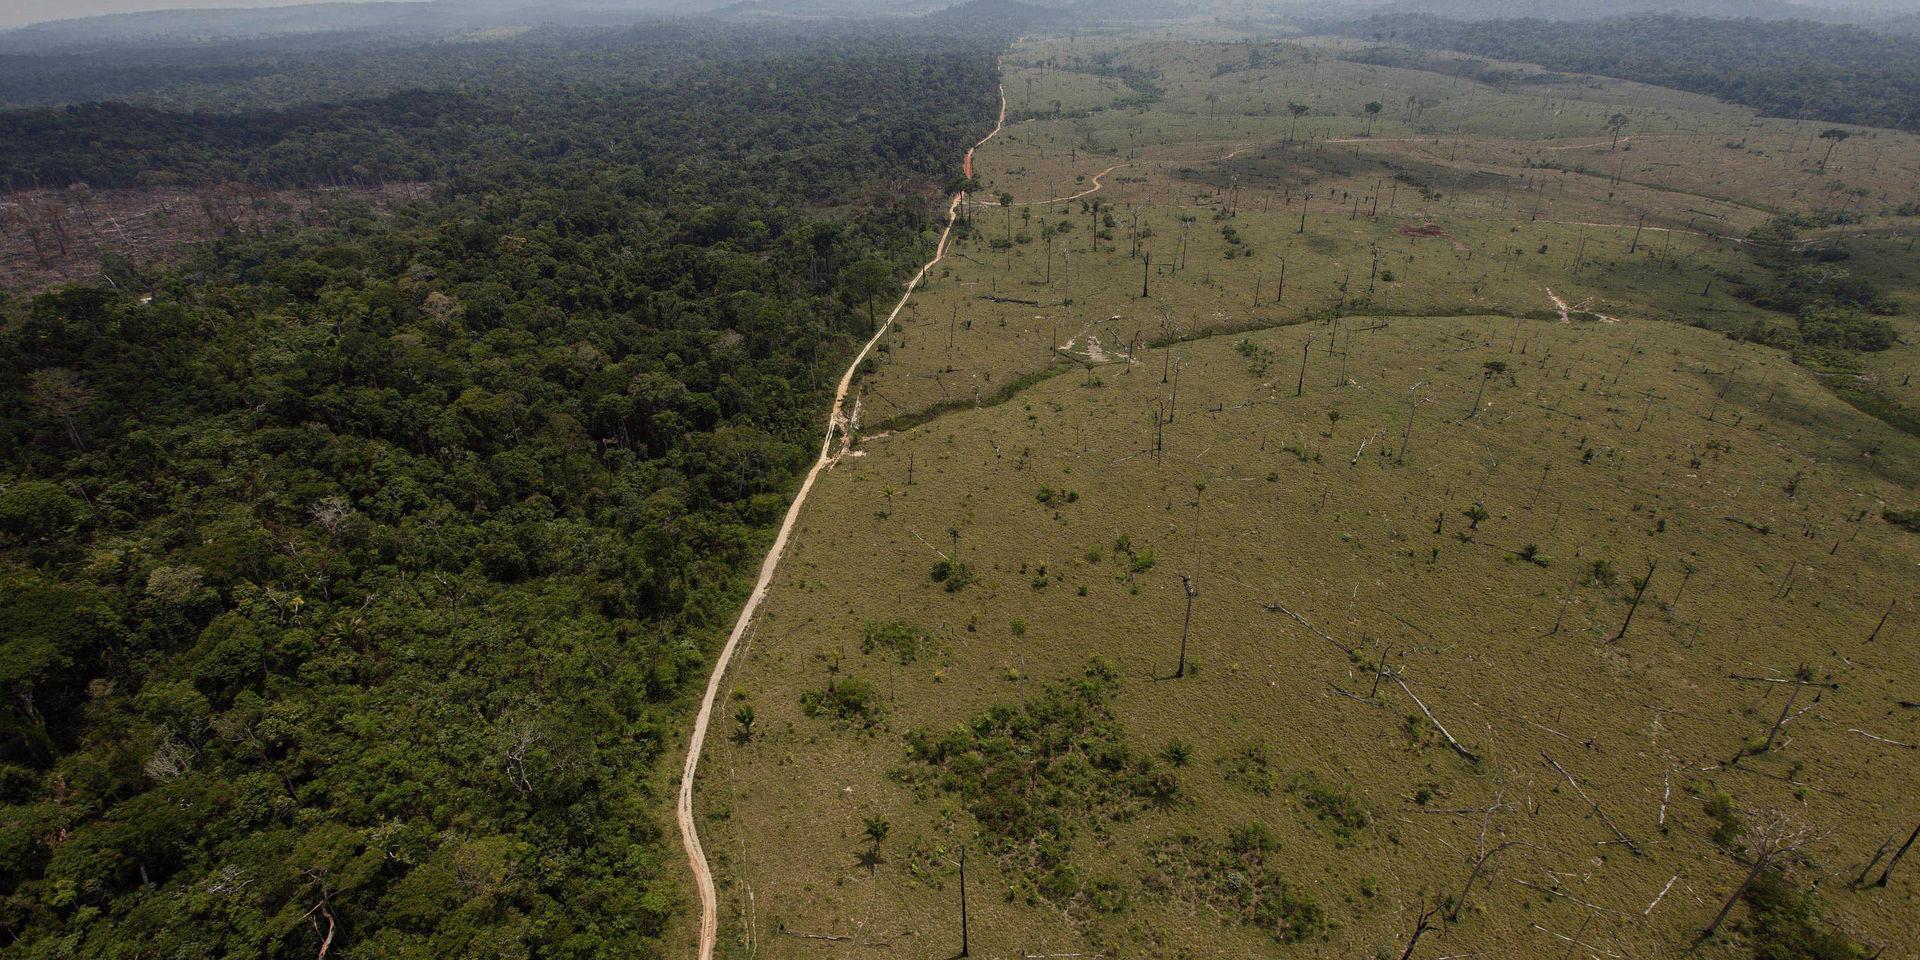 Skövlad regnskog. Bilden från 2009 visar ett avskogat område nära Nove Progresso i södra Brasilien. 